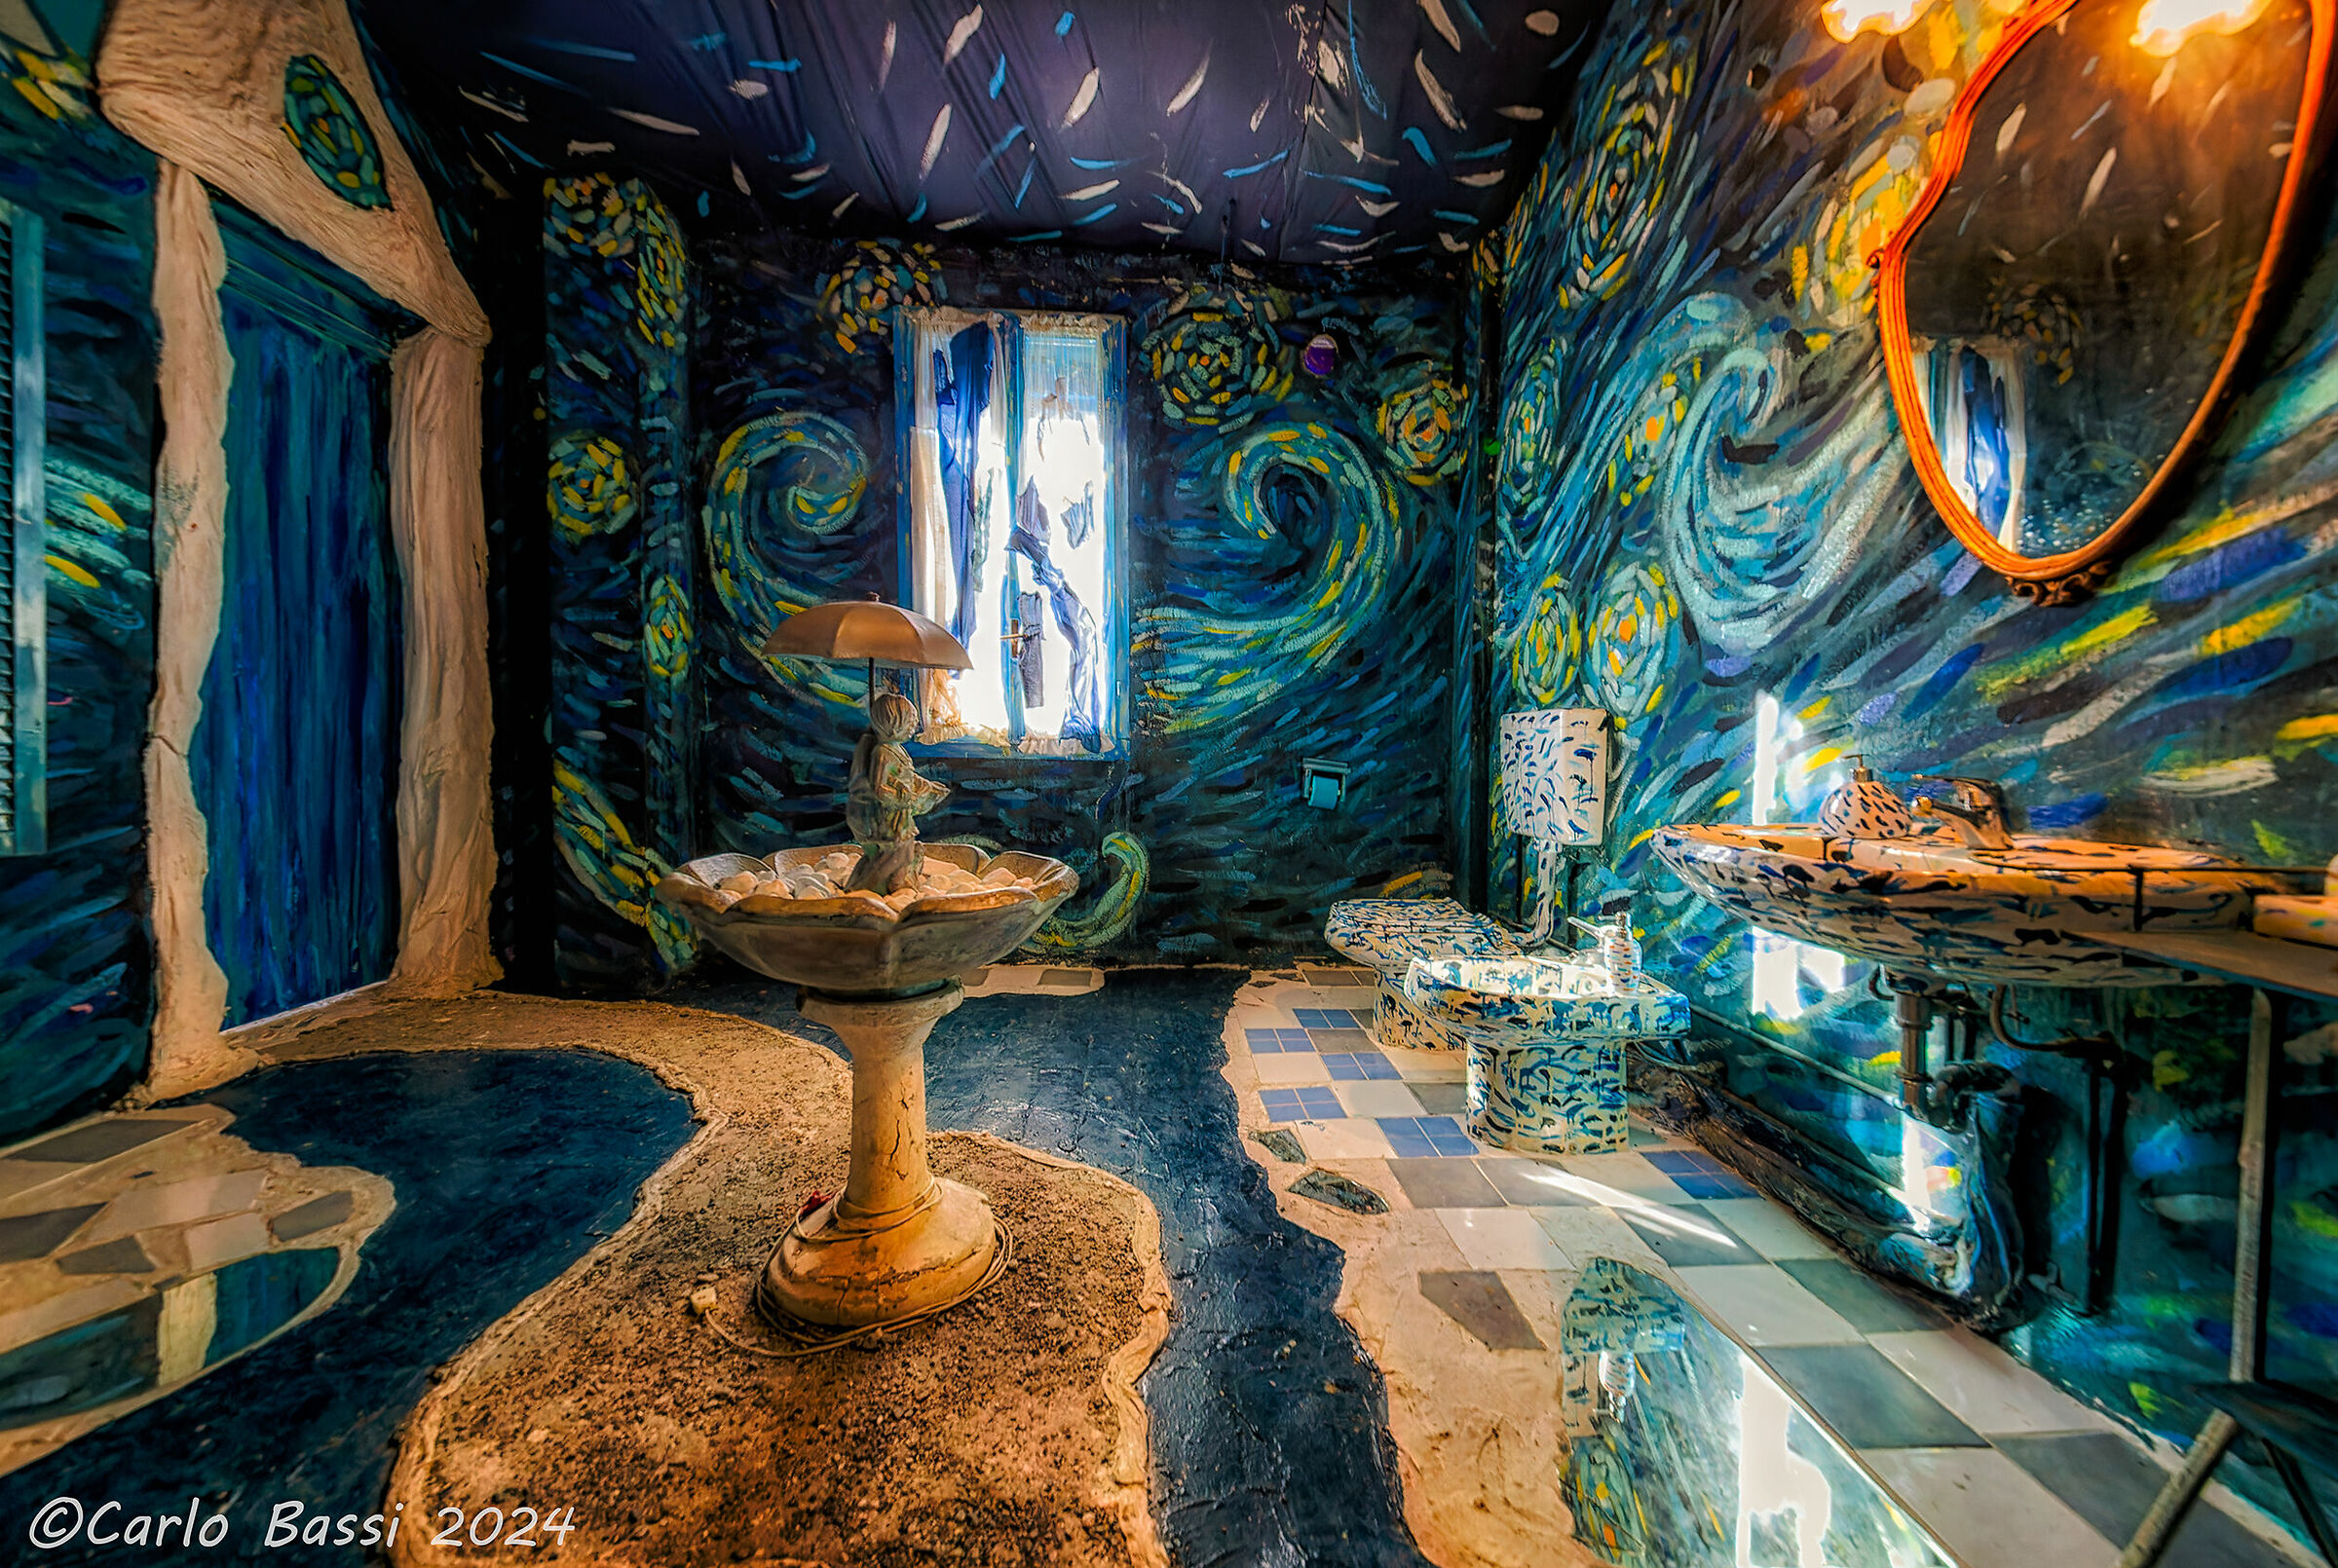 Paciu Maison, the Van Gogh-style bathroom...